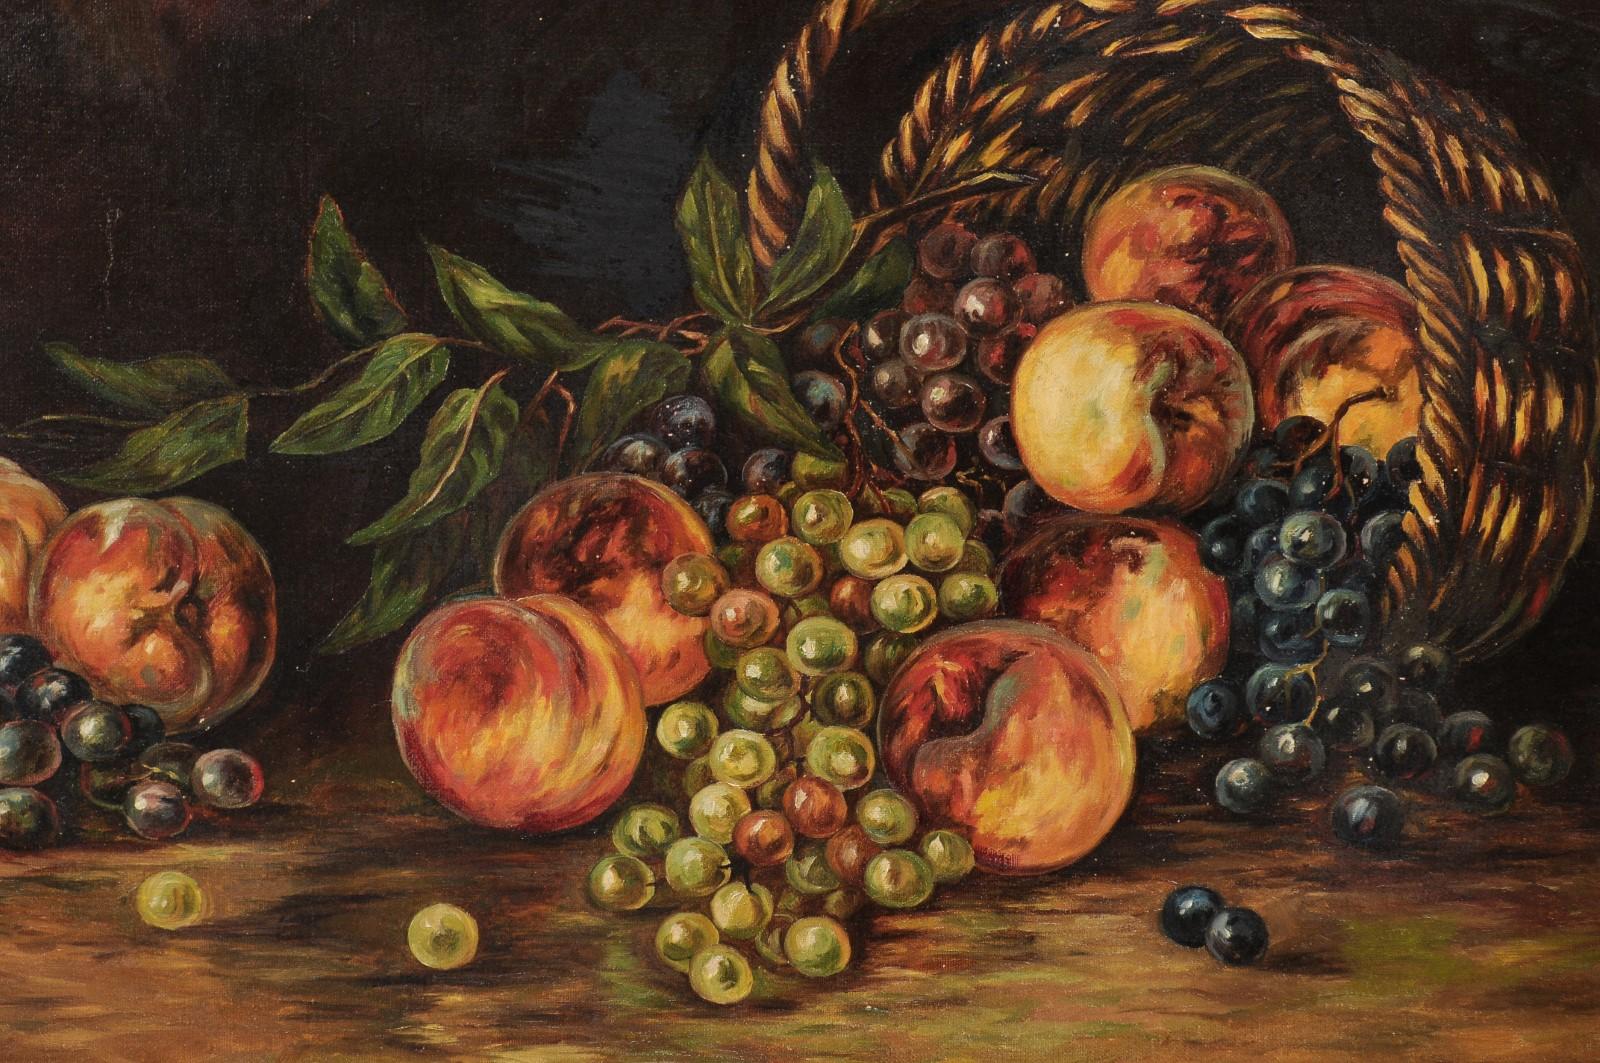 Peinture de nature morte américaine du 19ème siècle encadrée représentant des pêches et des raisins 8